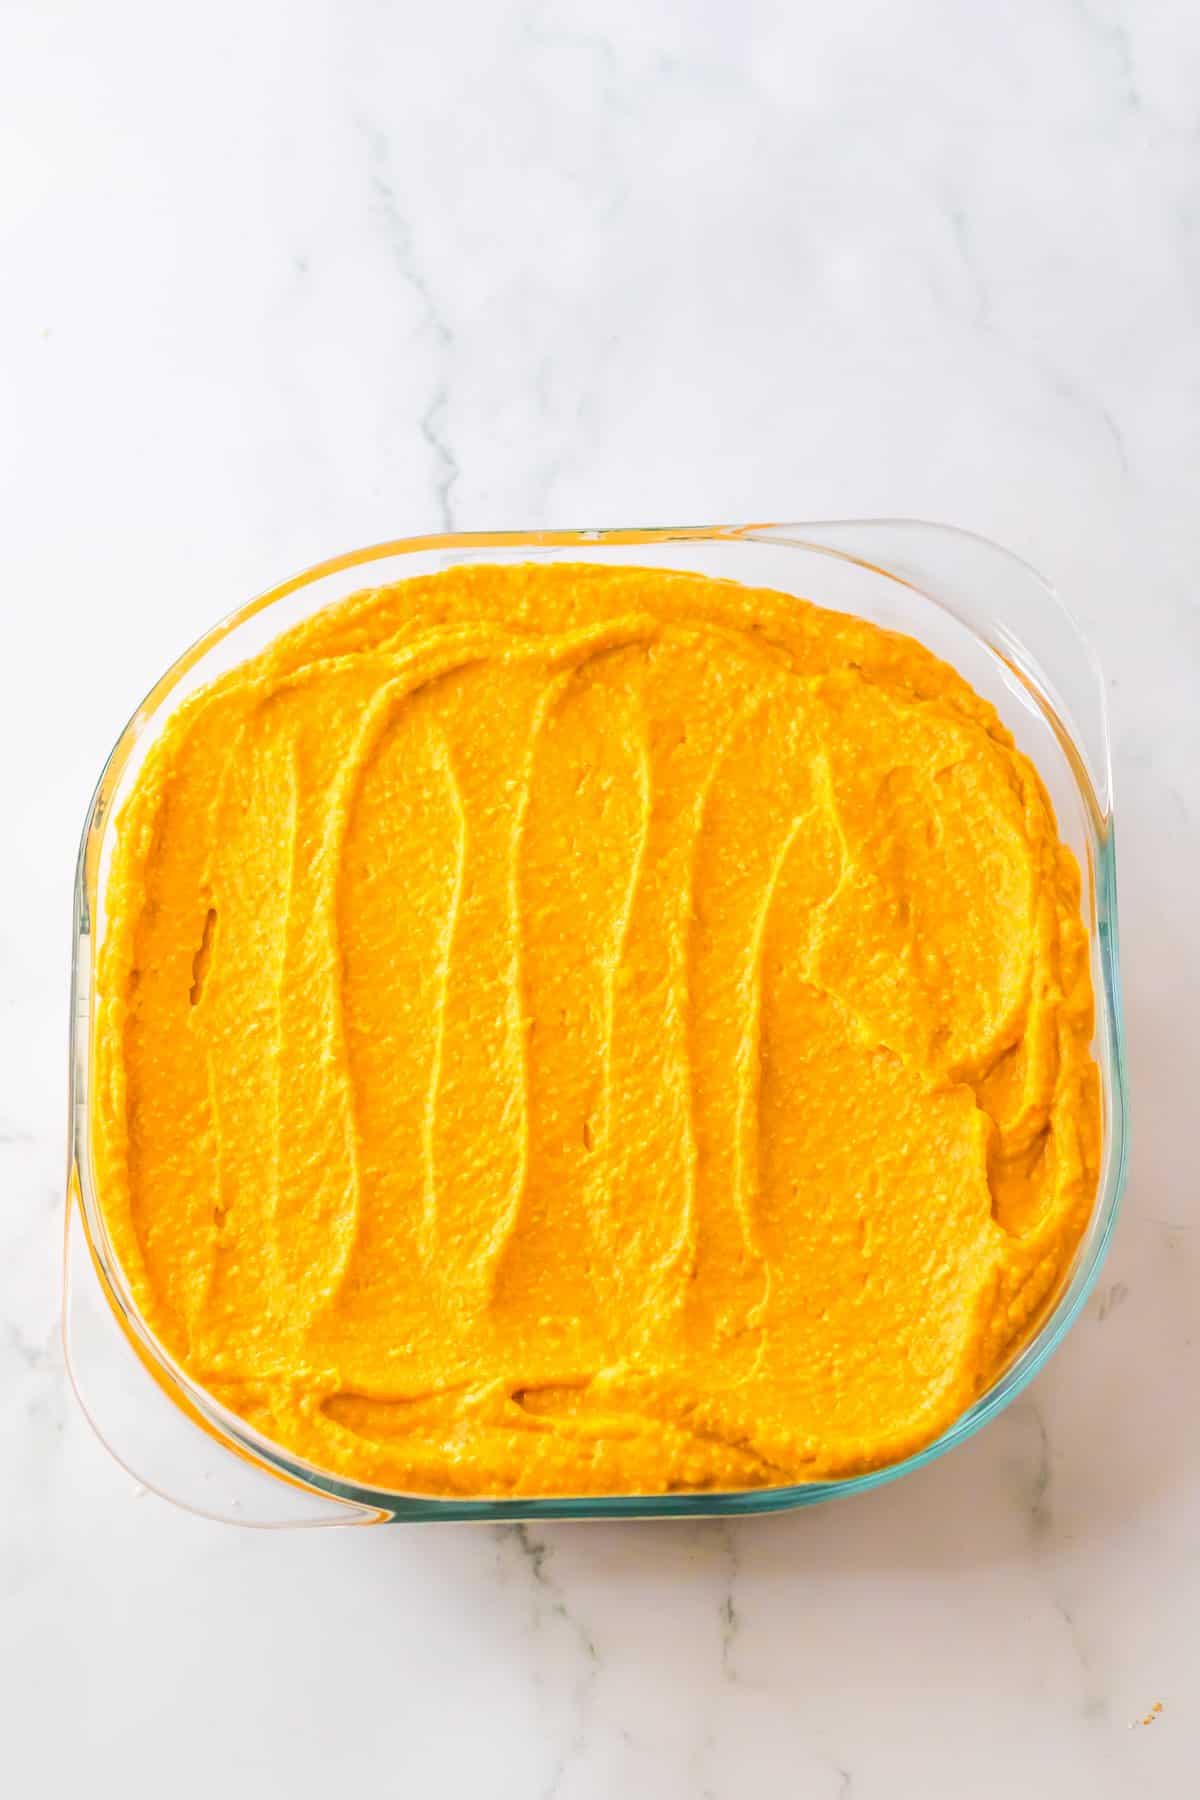 Pumpkin layer spread in a square dish.